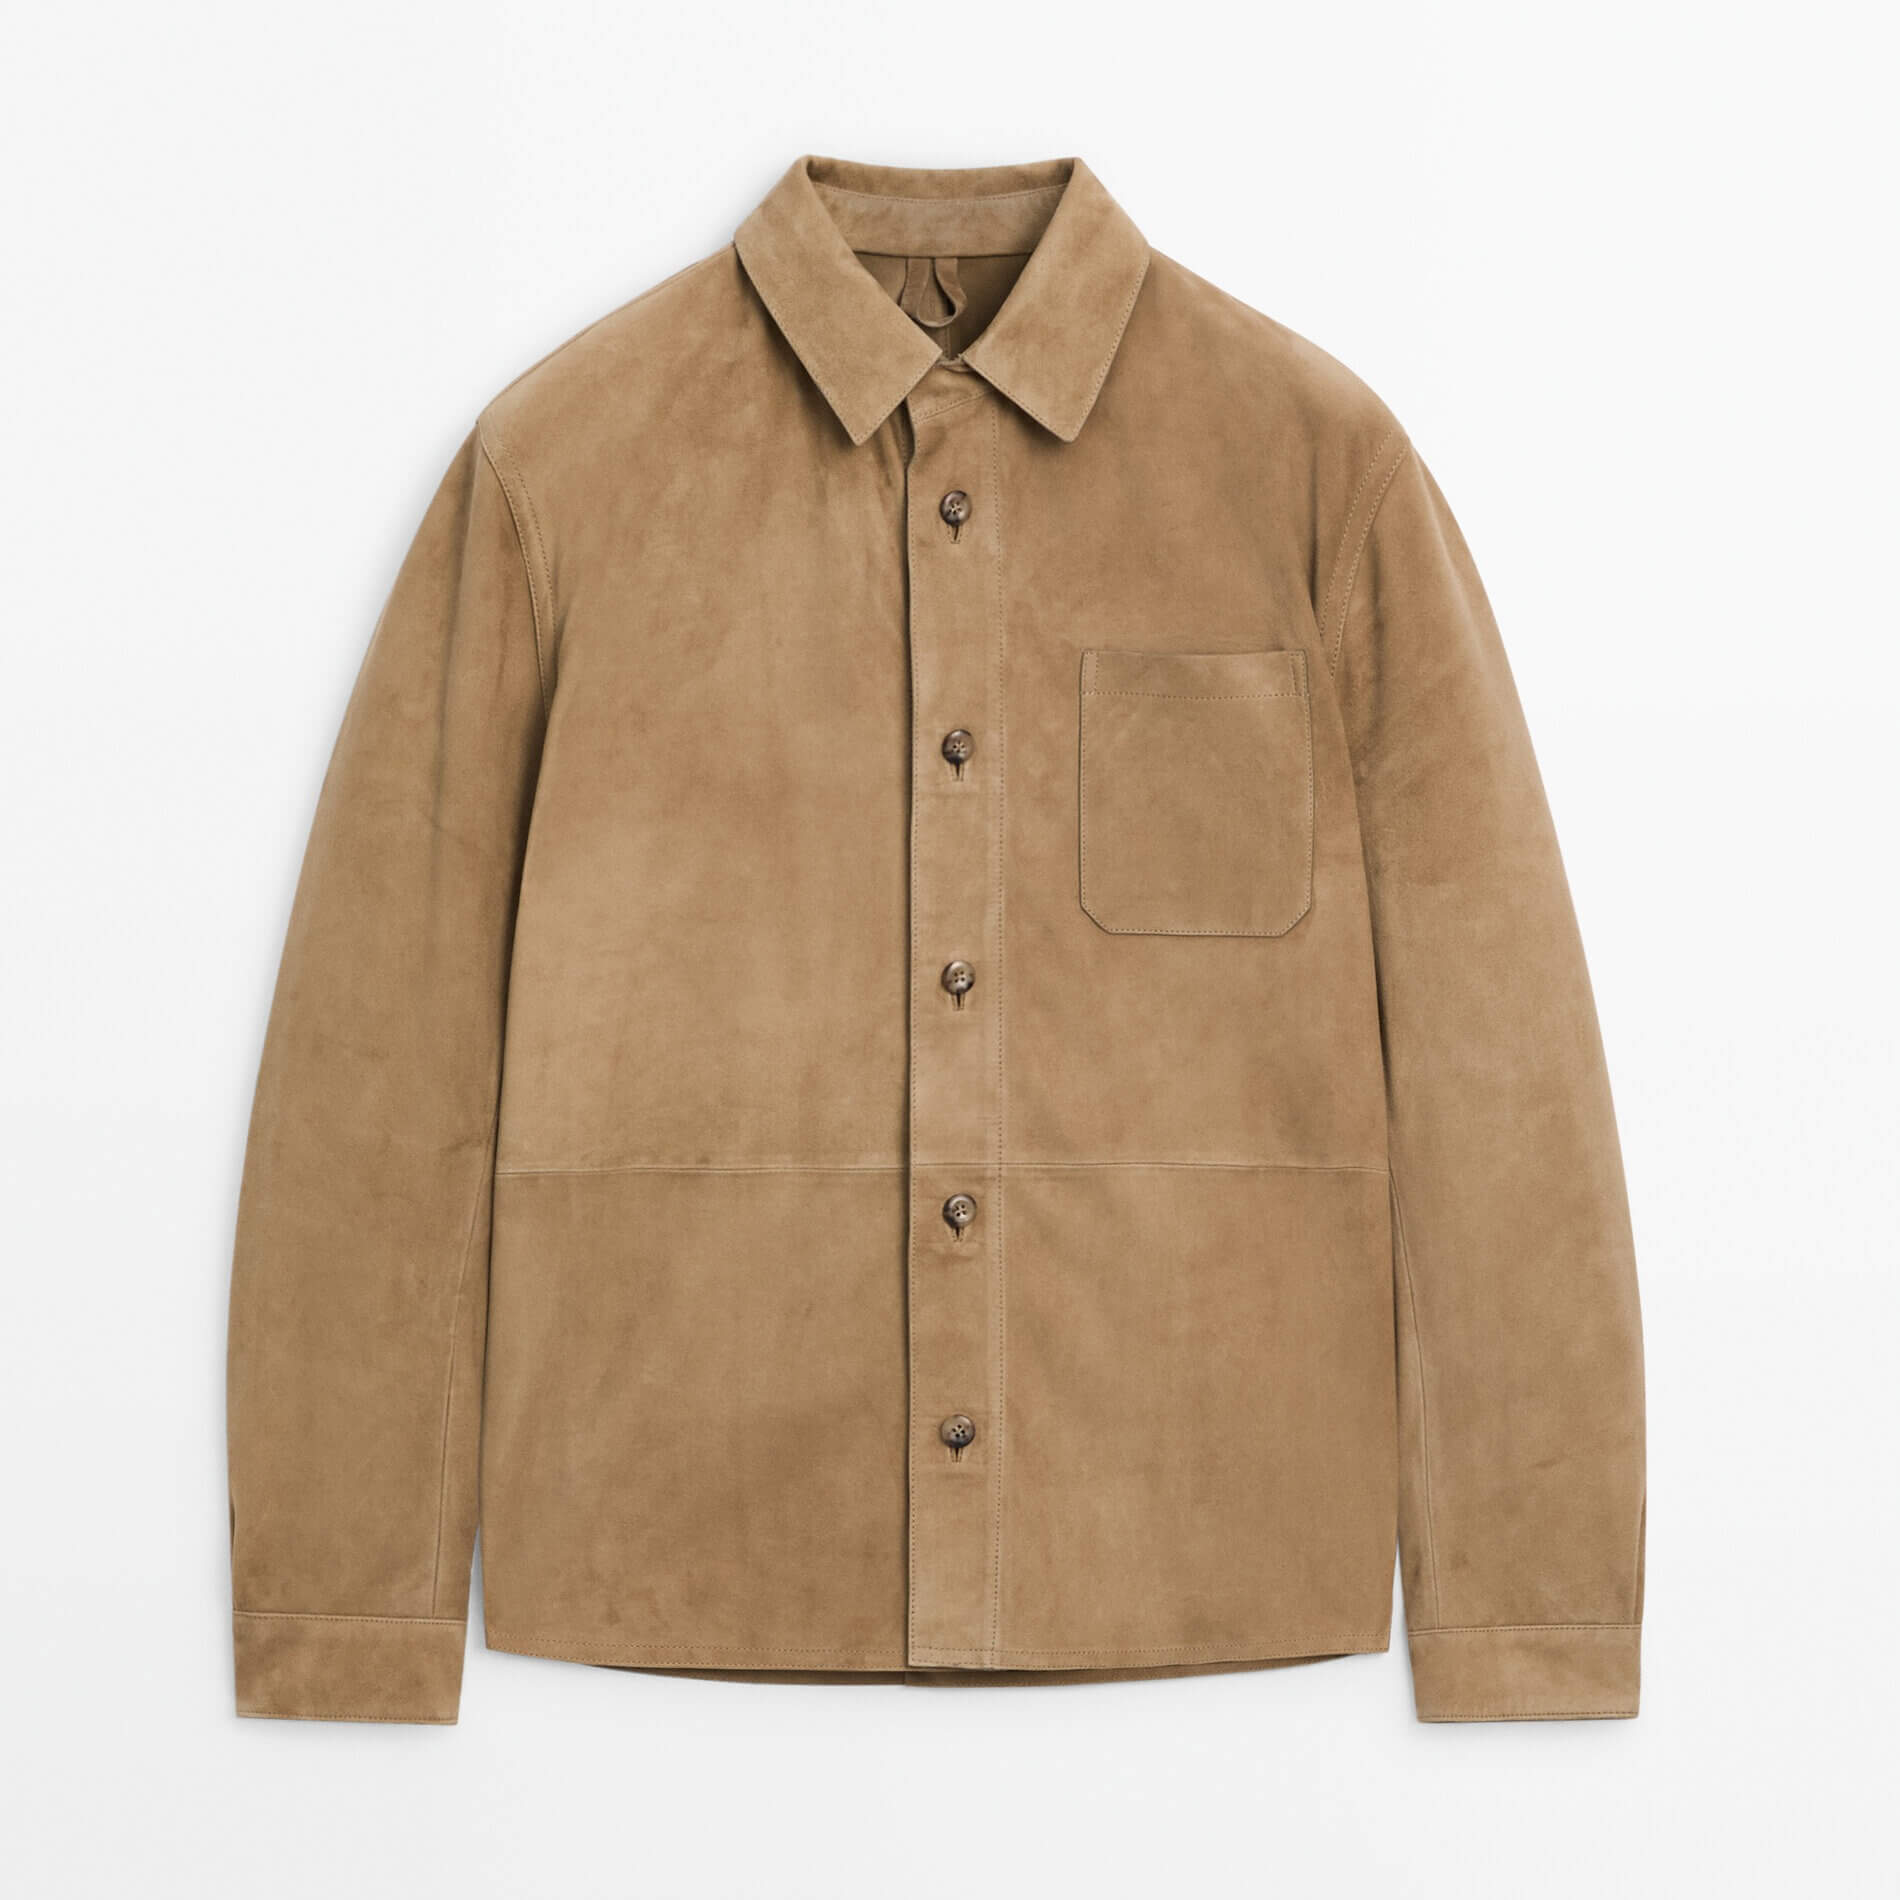 Куртка-рубашка Massimo Dutti Suede With Chest Pocket, бежевый куртка рубашка massimo dutti cotton with chest pocket хаки